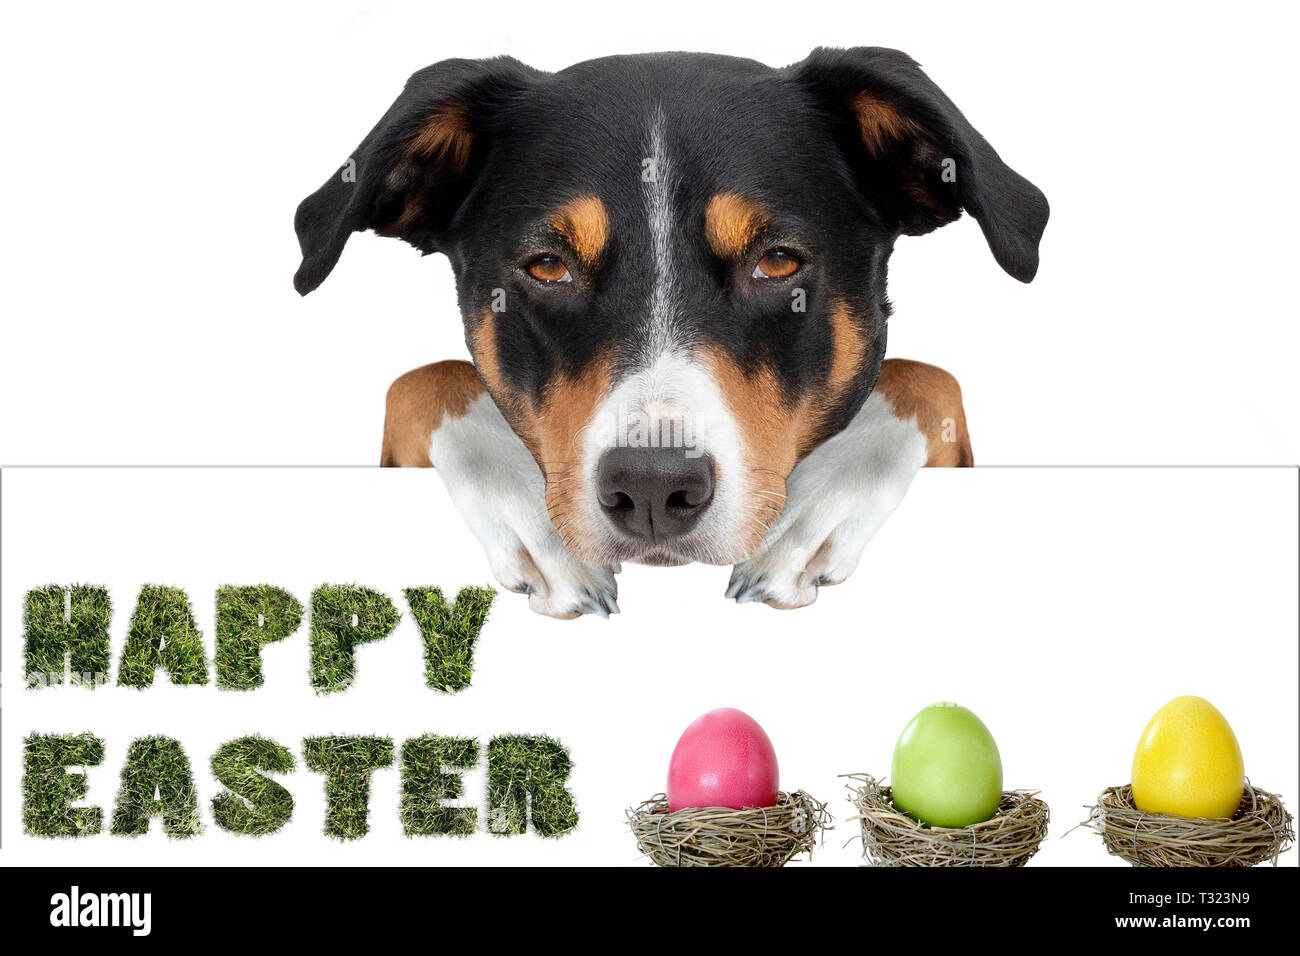 Ostern Hund mit Ostereiern Holding ein Plakat von hinten, frohe Ostern seit  Stockfotografie - Alamy